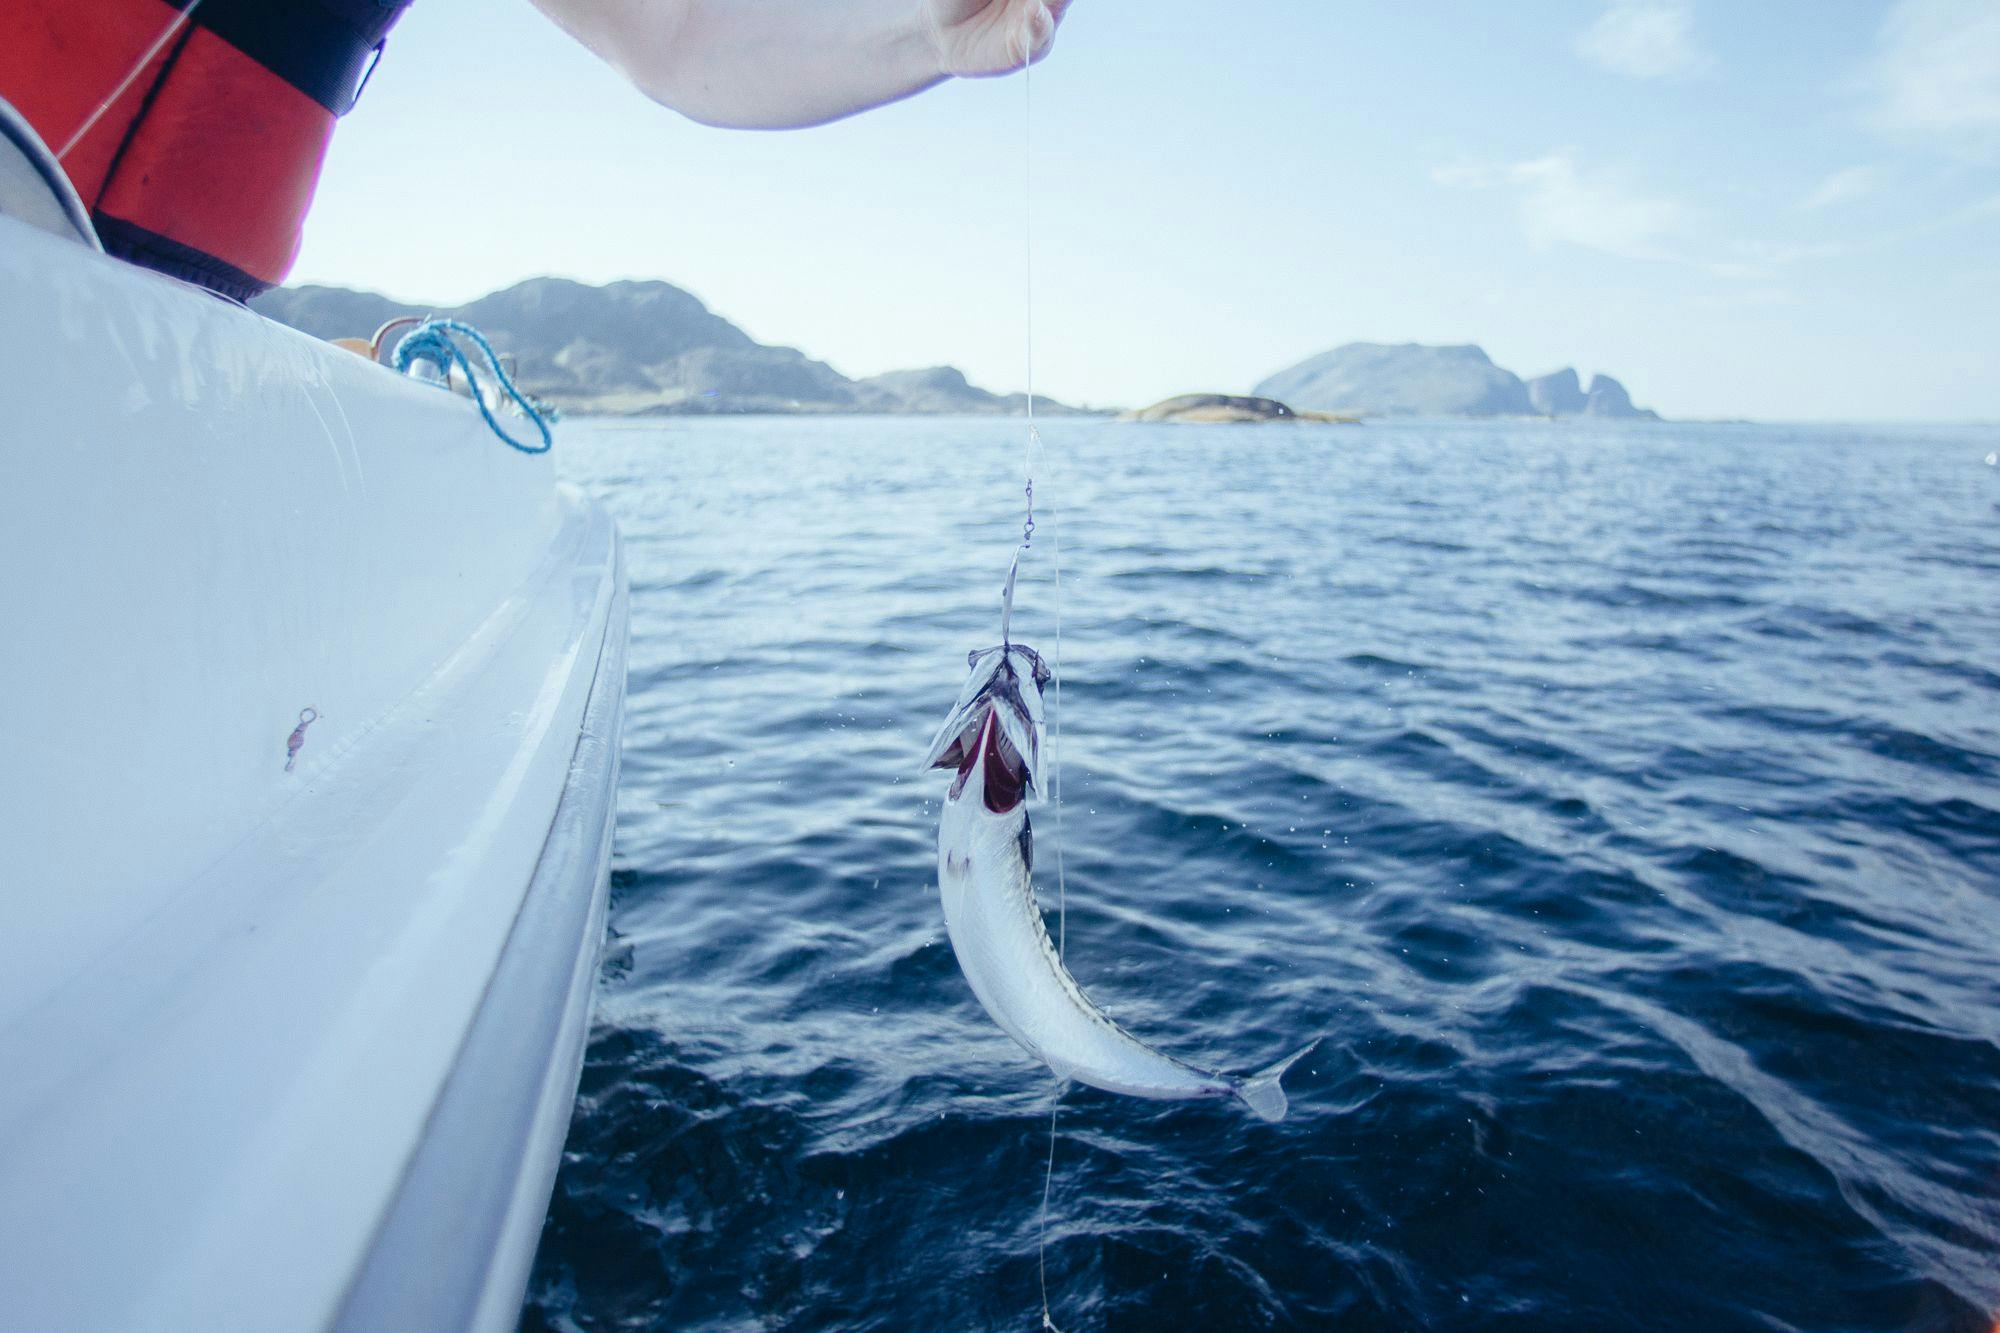 Makrell som trekkes opp i båt, med Kinnaklova i bakgrunnen